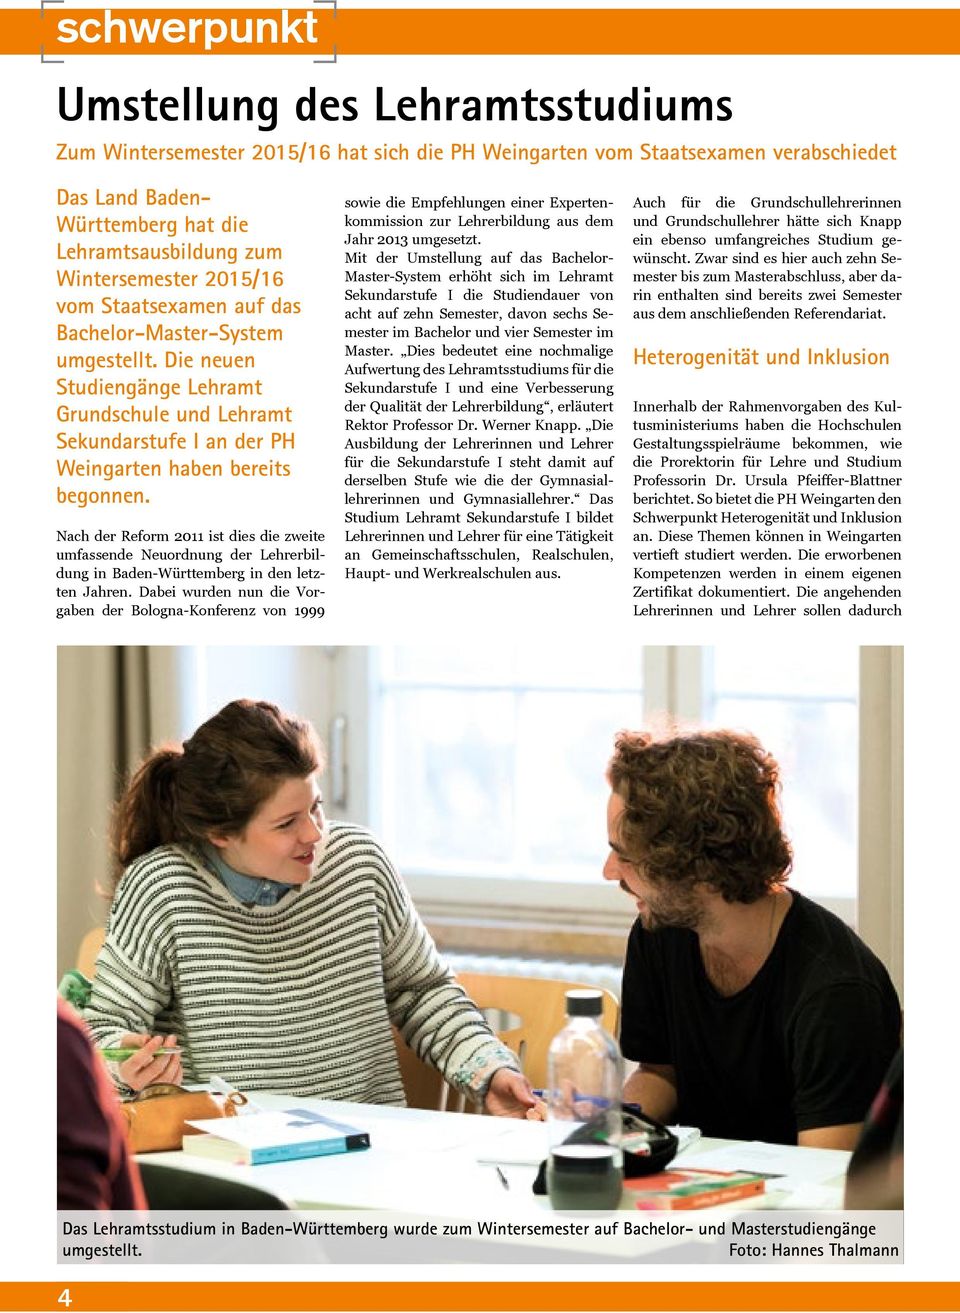 Nach der Reform 2011 ist dies die zweite umfassende Neuordnung der Lehrerbildung in Baden-Württemberg in den letzten Jahren.